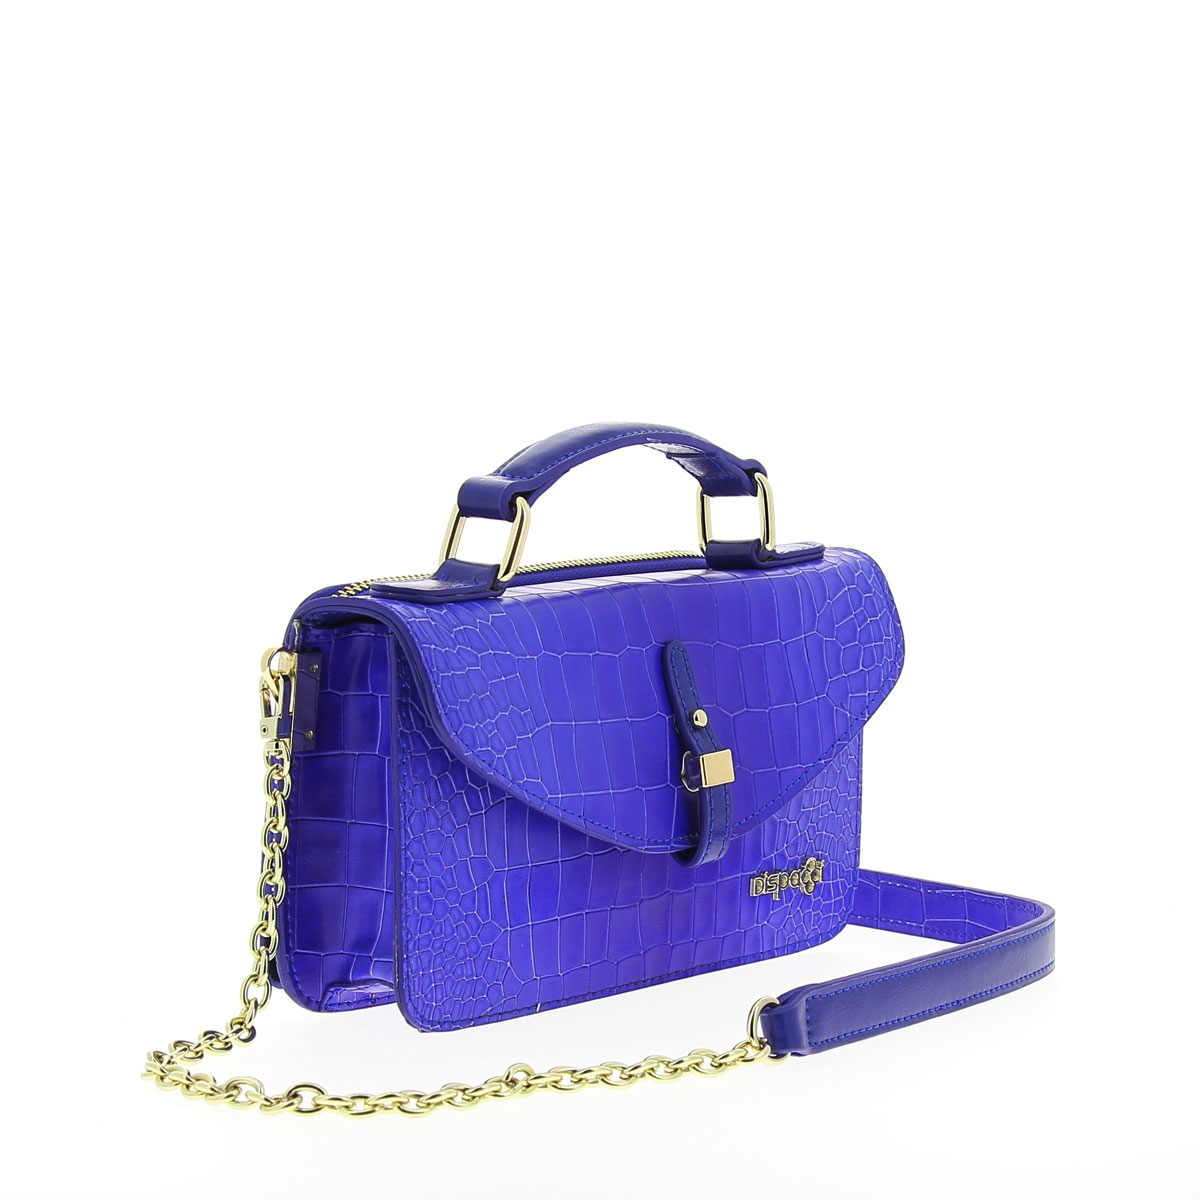 Сумка женская "Dispacci", цвет: синий. Т3191-1 - купить фирменную сумку по доступной цене с доставкой на дом в интернет магазине OZON.ru